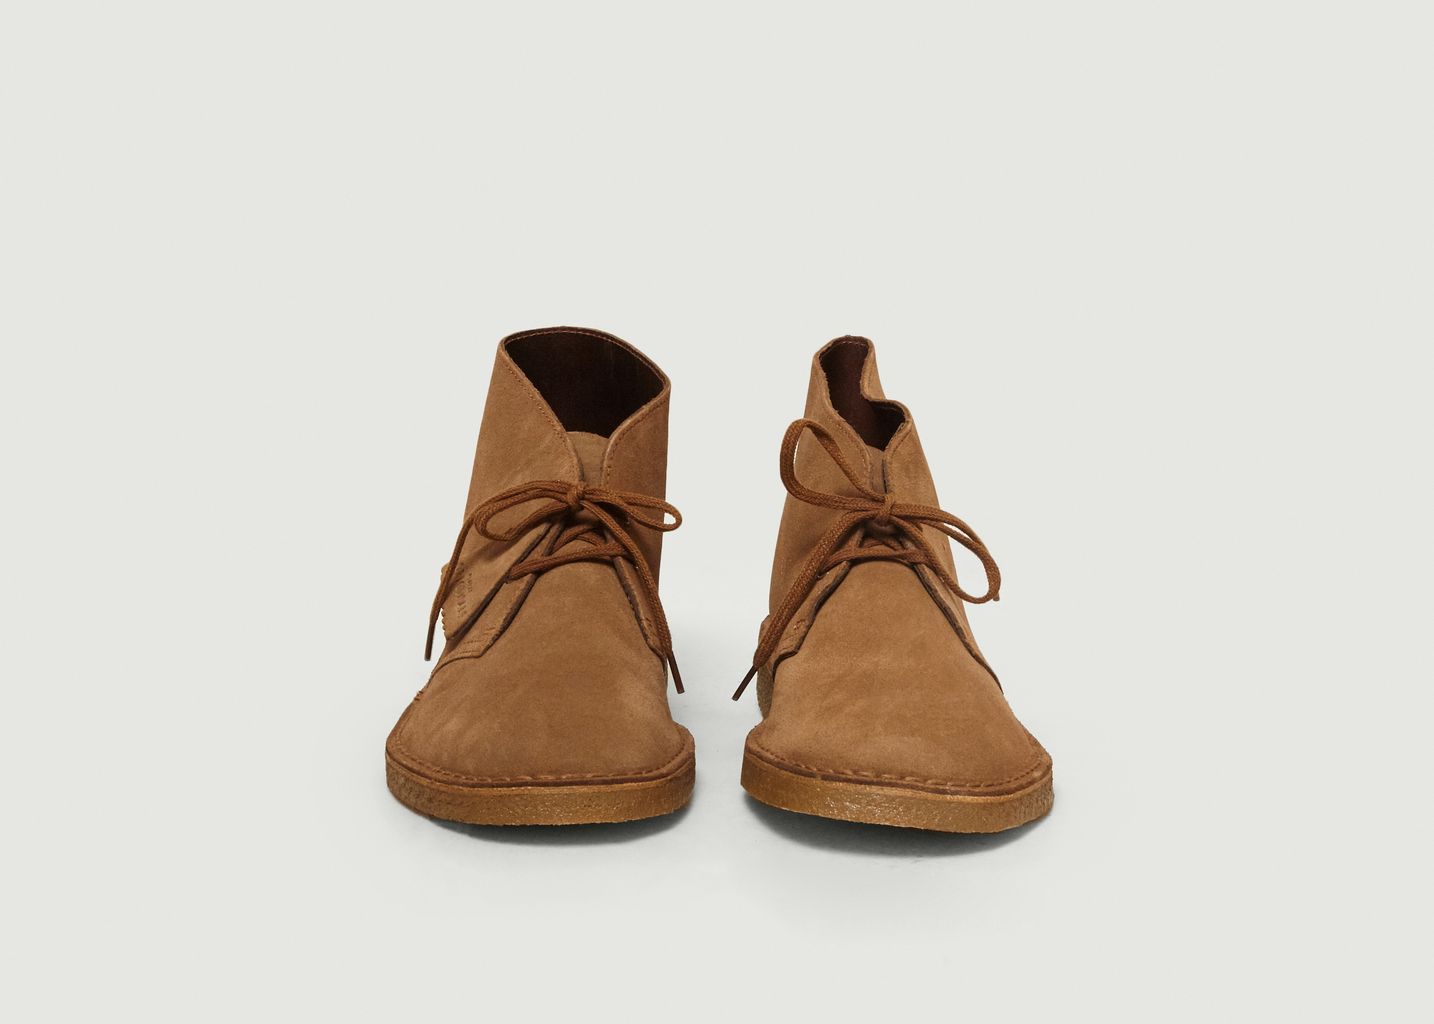 Desert boots en daim - Clarks Originals